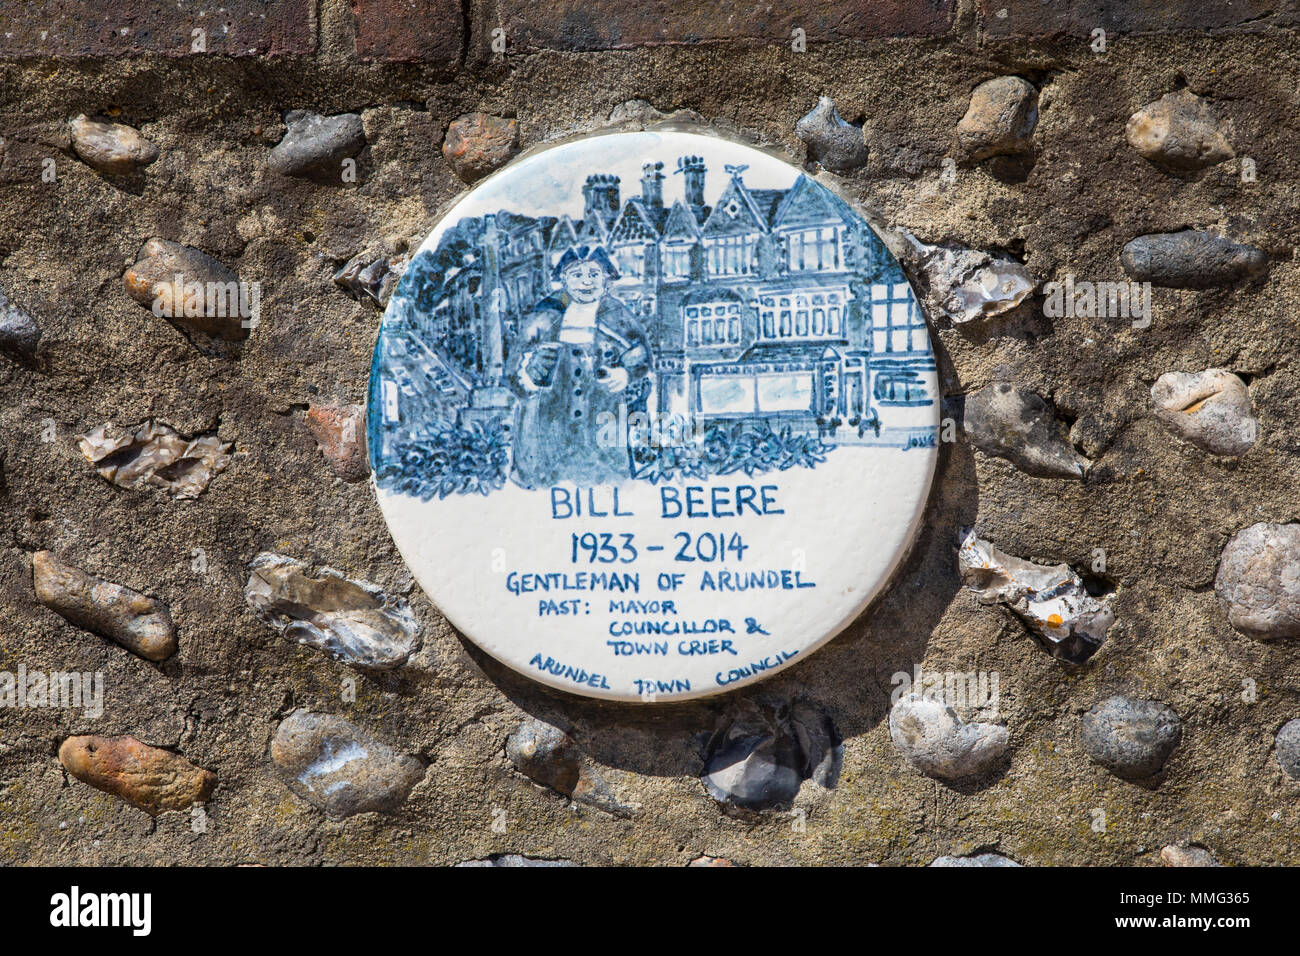 ARUNDEL, Reino Unido - 05 DE MAYO DE 2018: una placa en la calle alta en Arundel, conmemorando la vida de Bill Beere - un caballero de Arundel y pasado alcalde y T Foto de stock